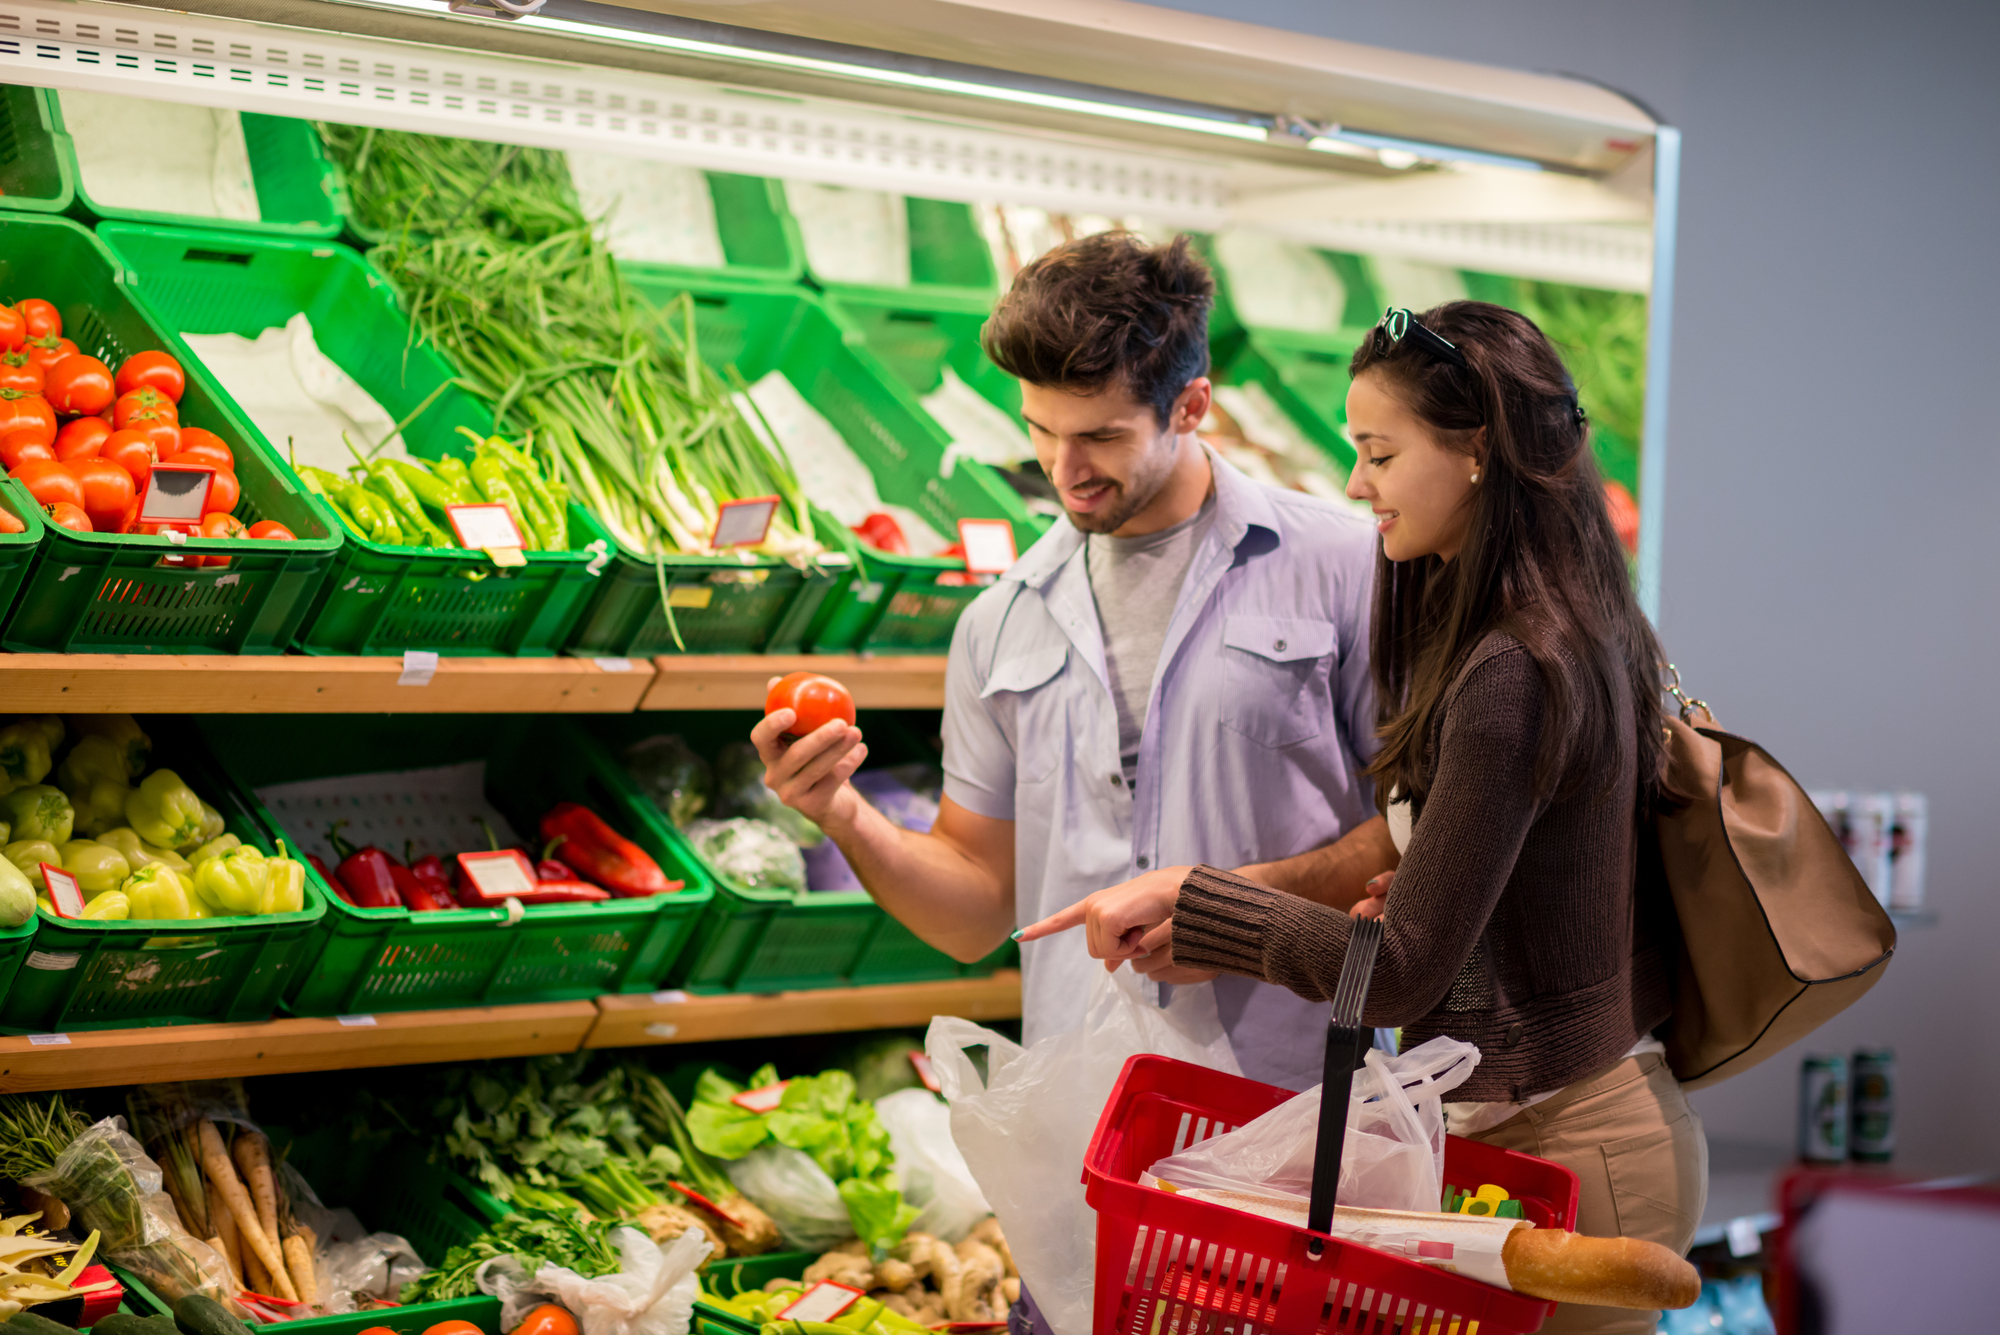 Ya se puede ir a comprar en pareja al supermercado? | Industria -  ComputerHoy.com